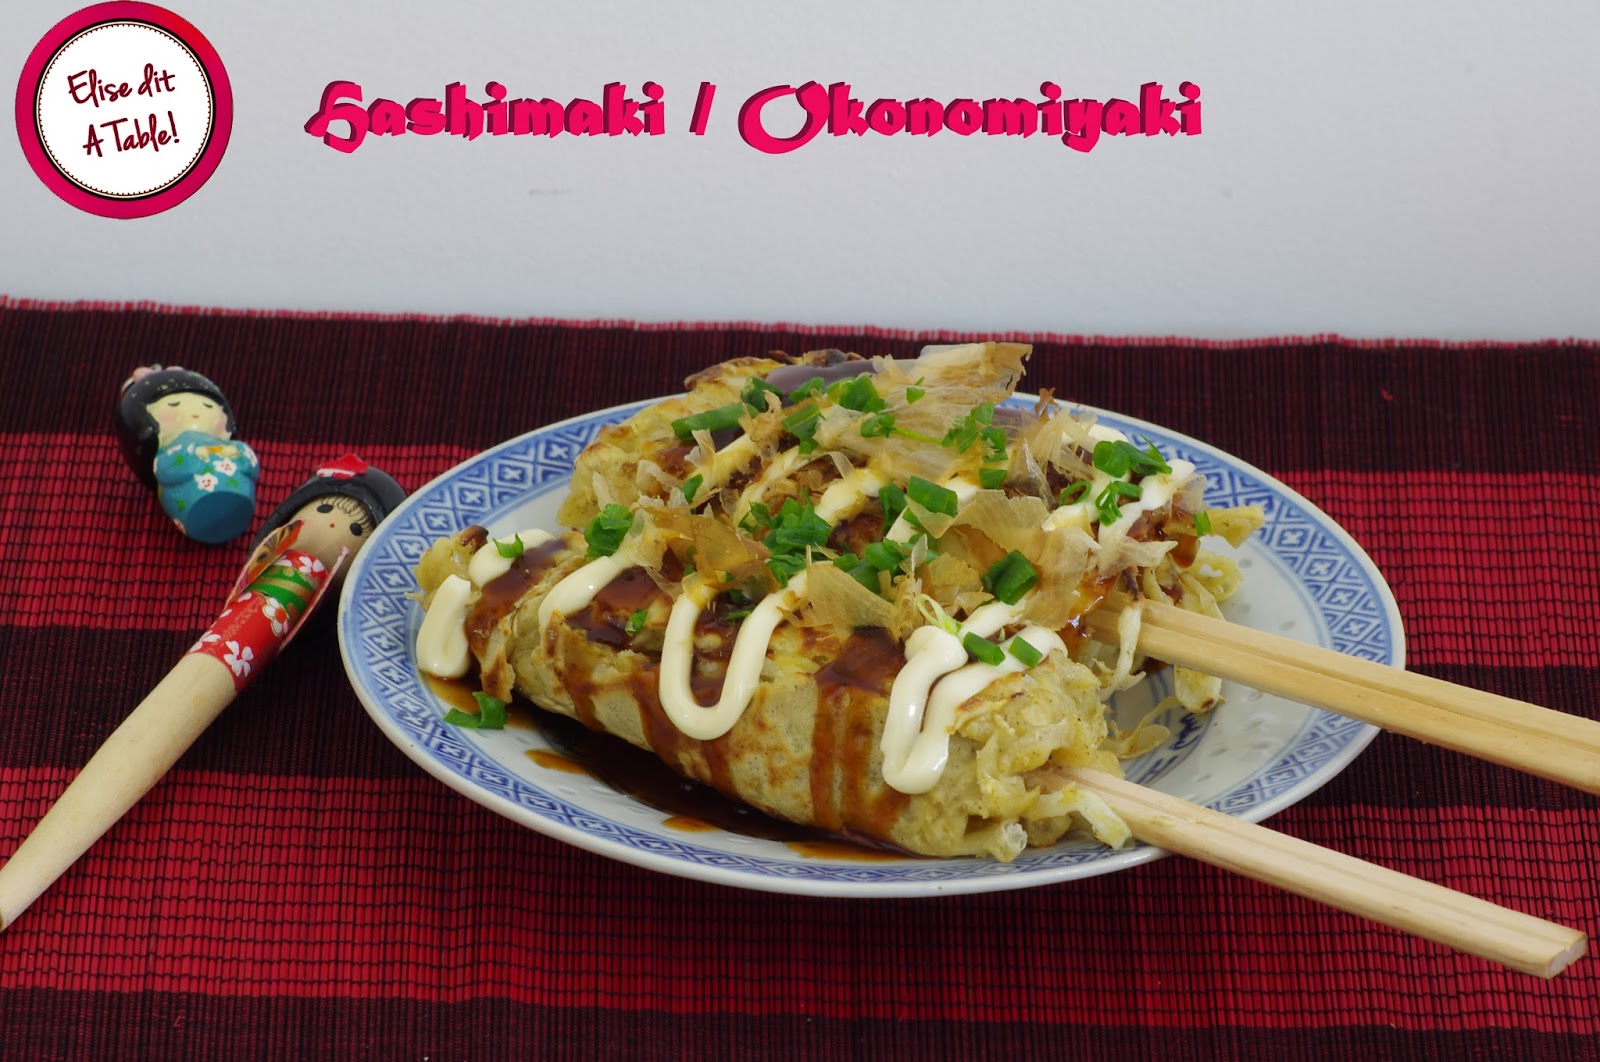 Recette Japonaise : Hashimaki / Okonomiyaki 